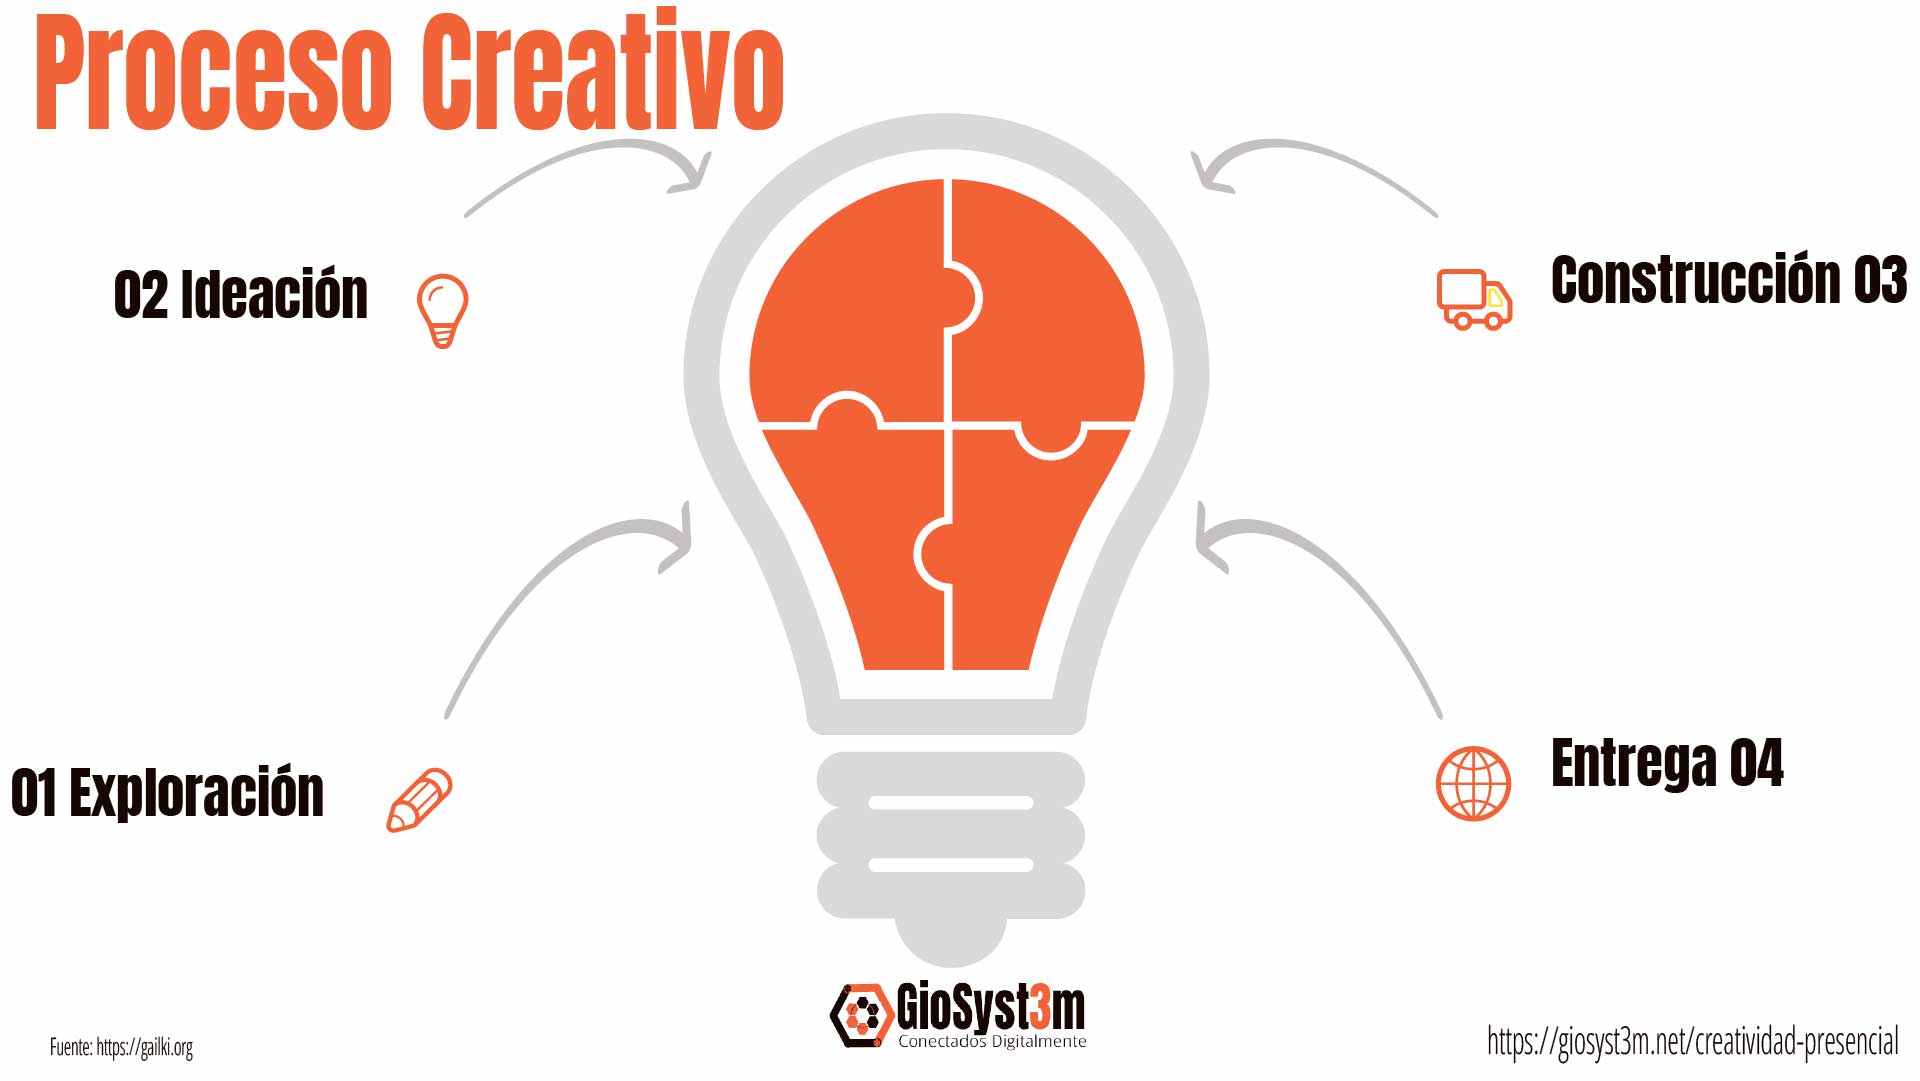 Proceso Creativo - InnovAgile Digital - GioSyst3m